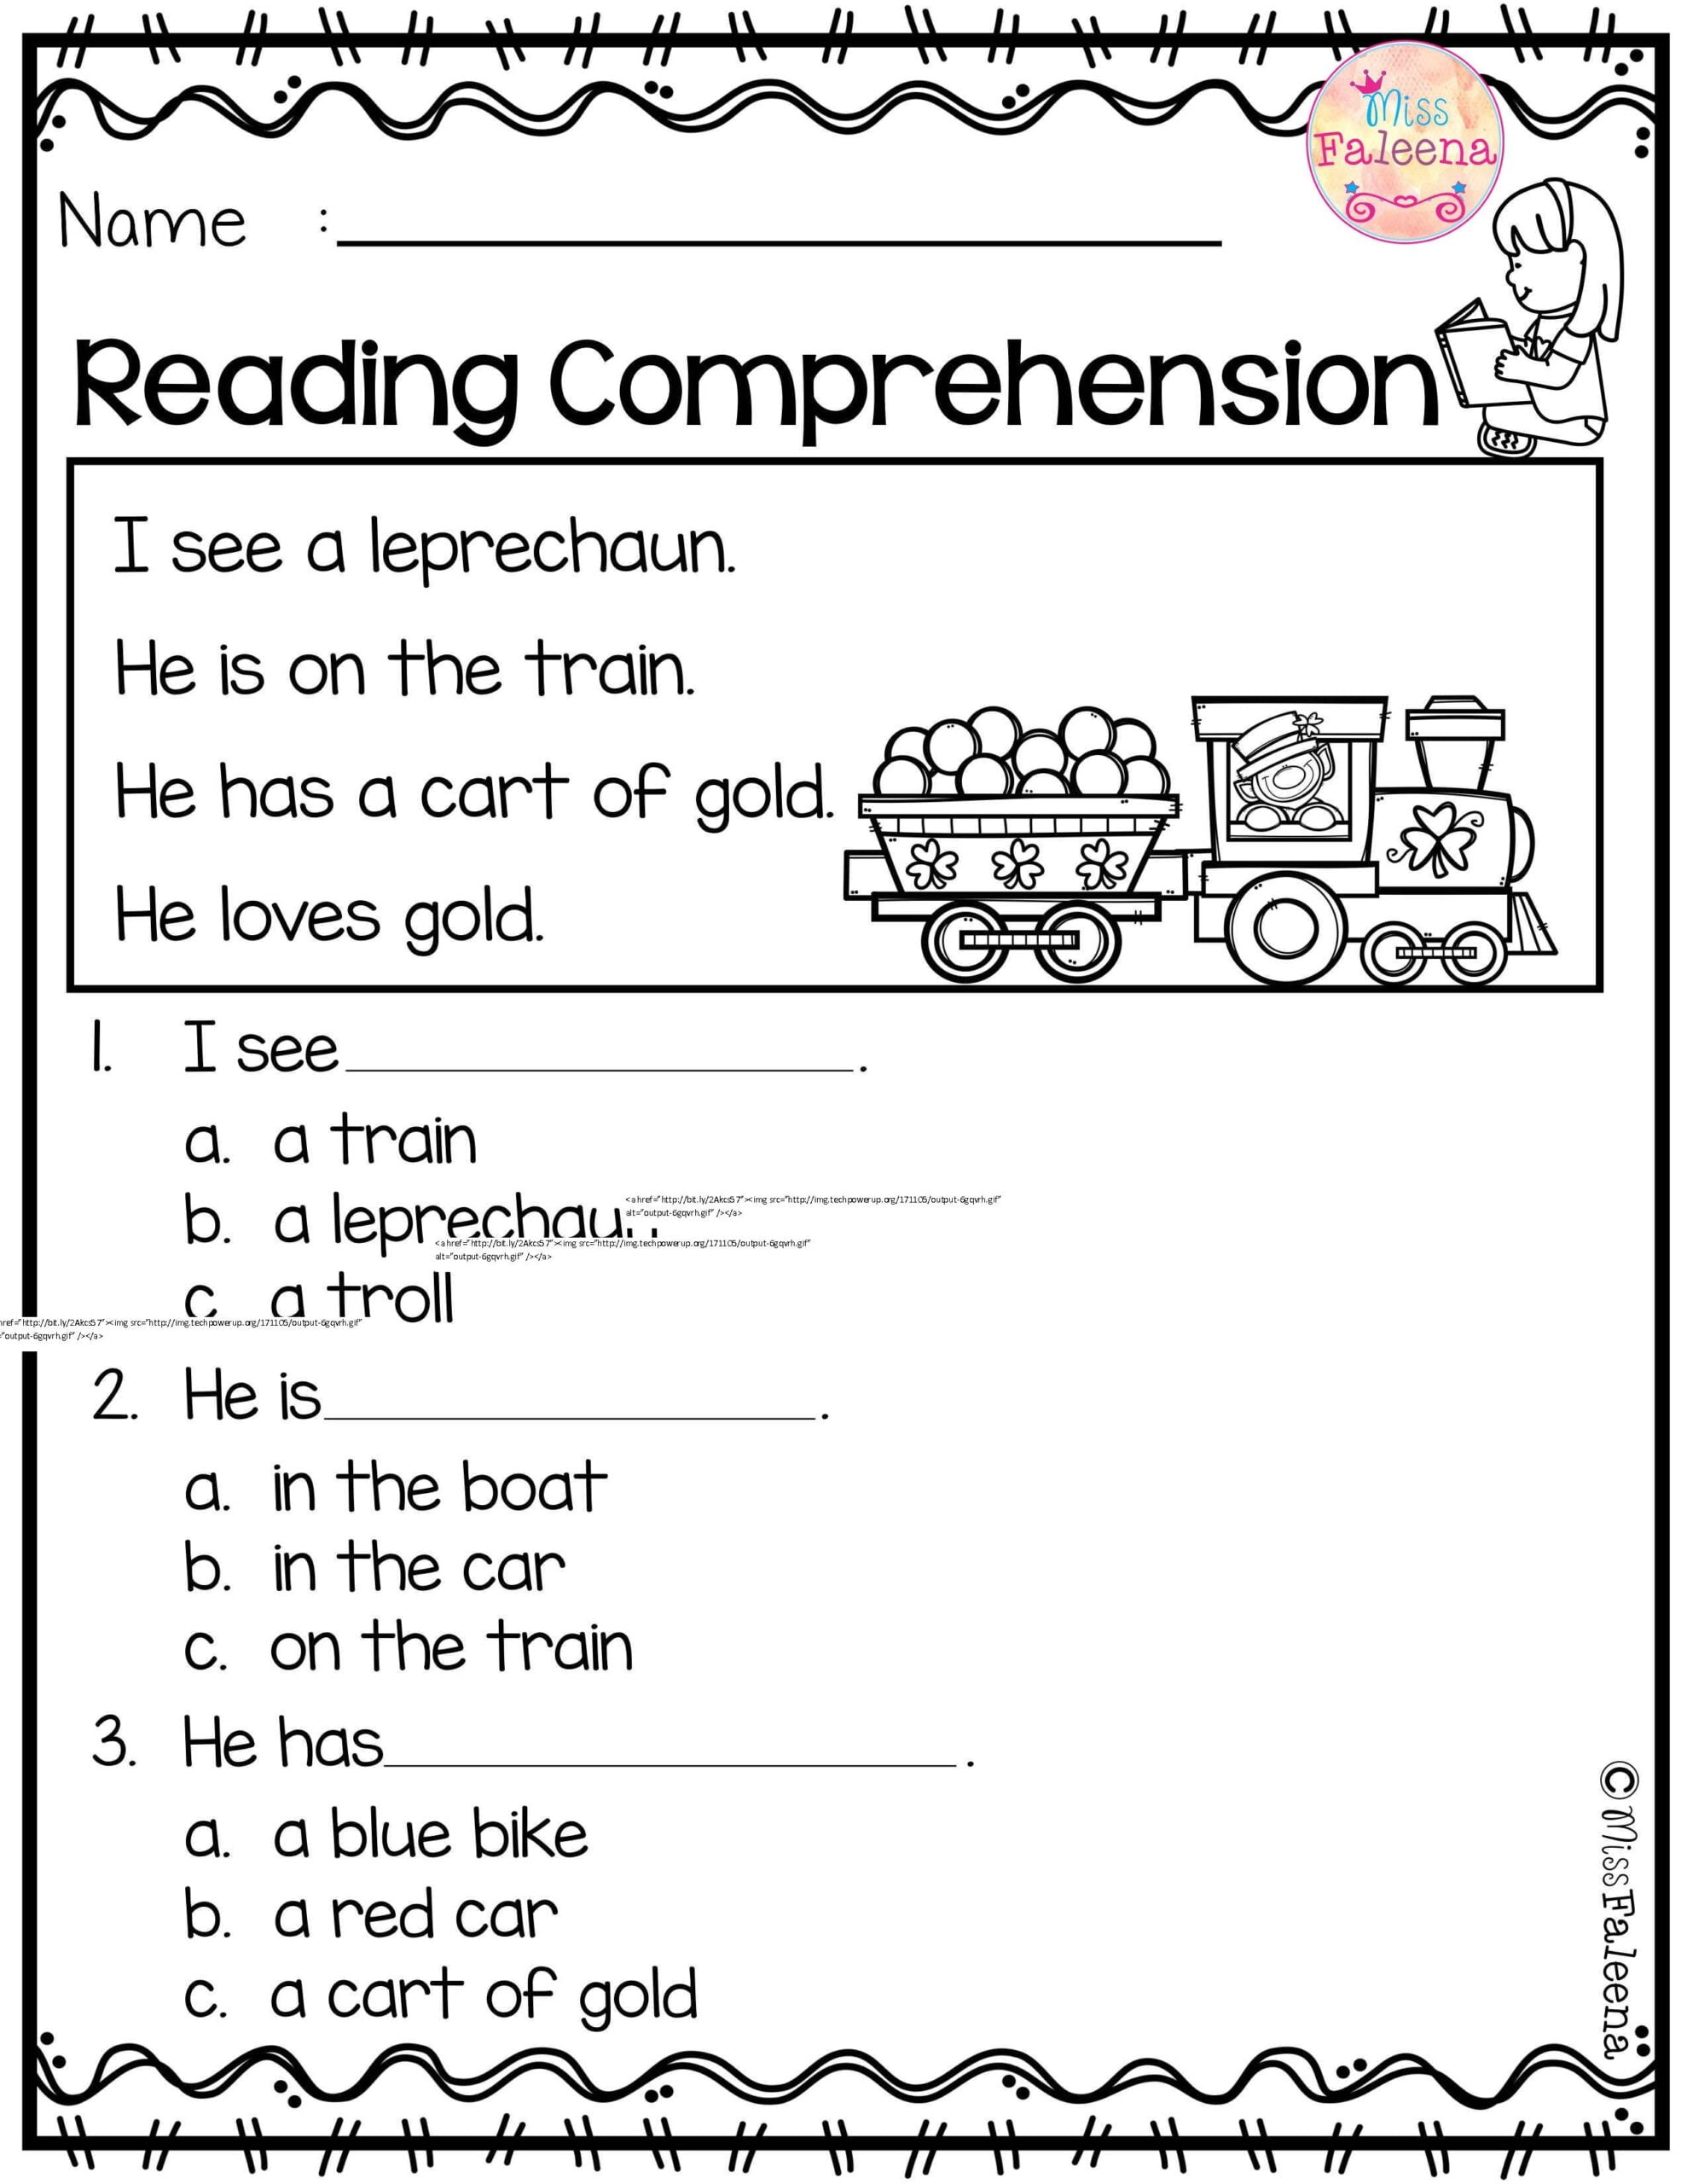 Free Printable Reading Comprehension Worksheets For Kinder